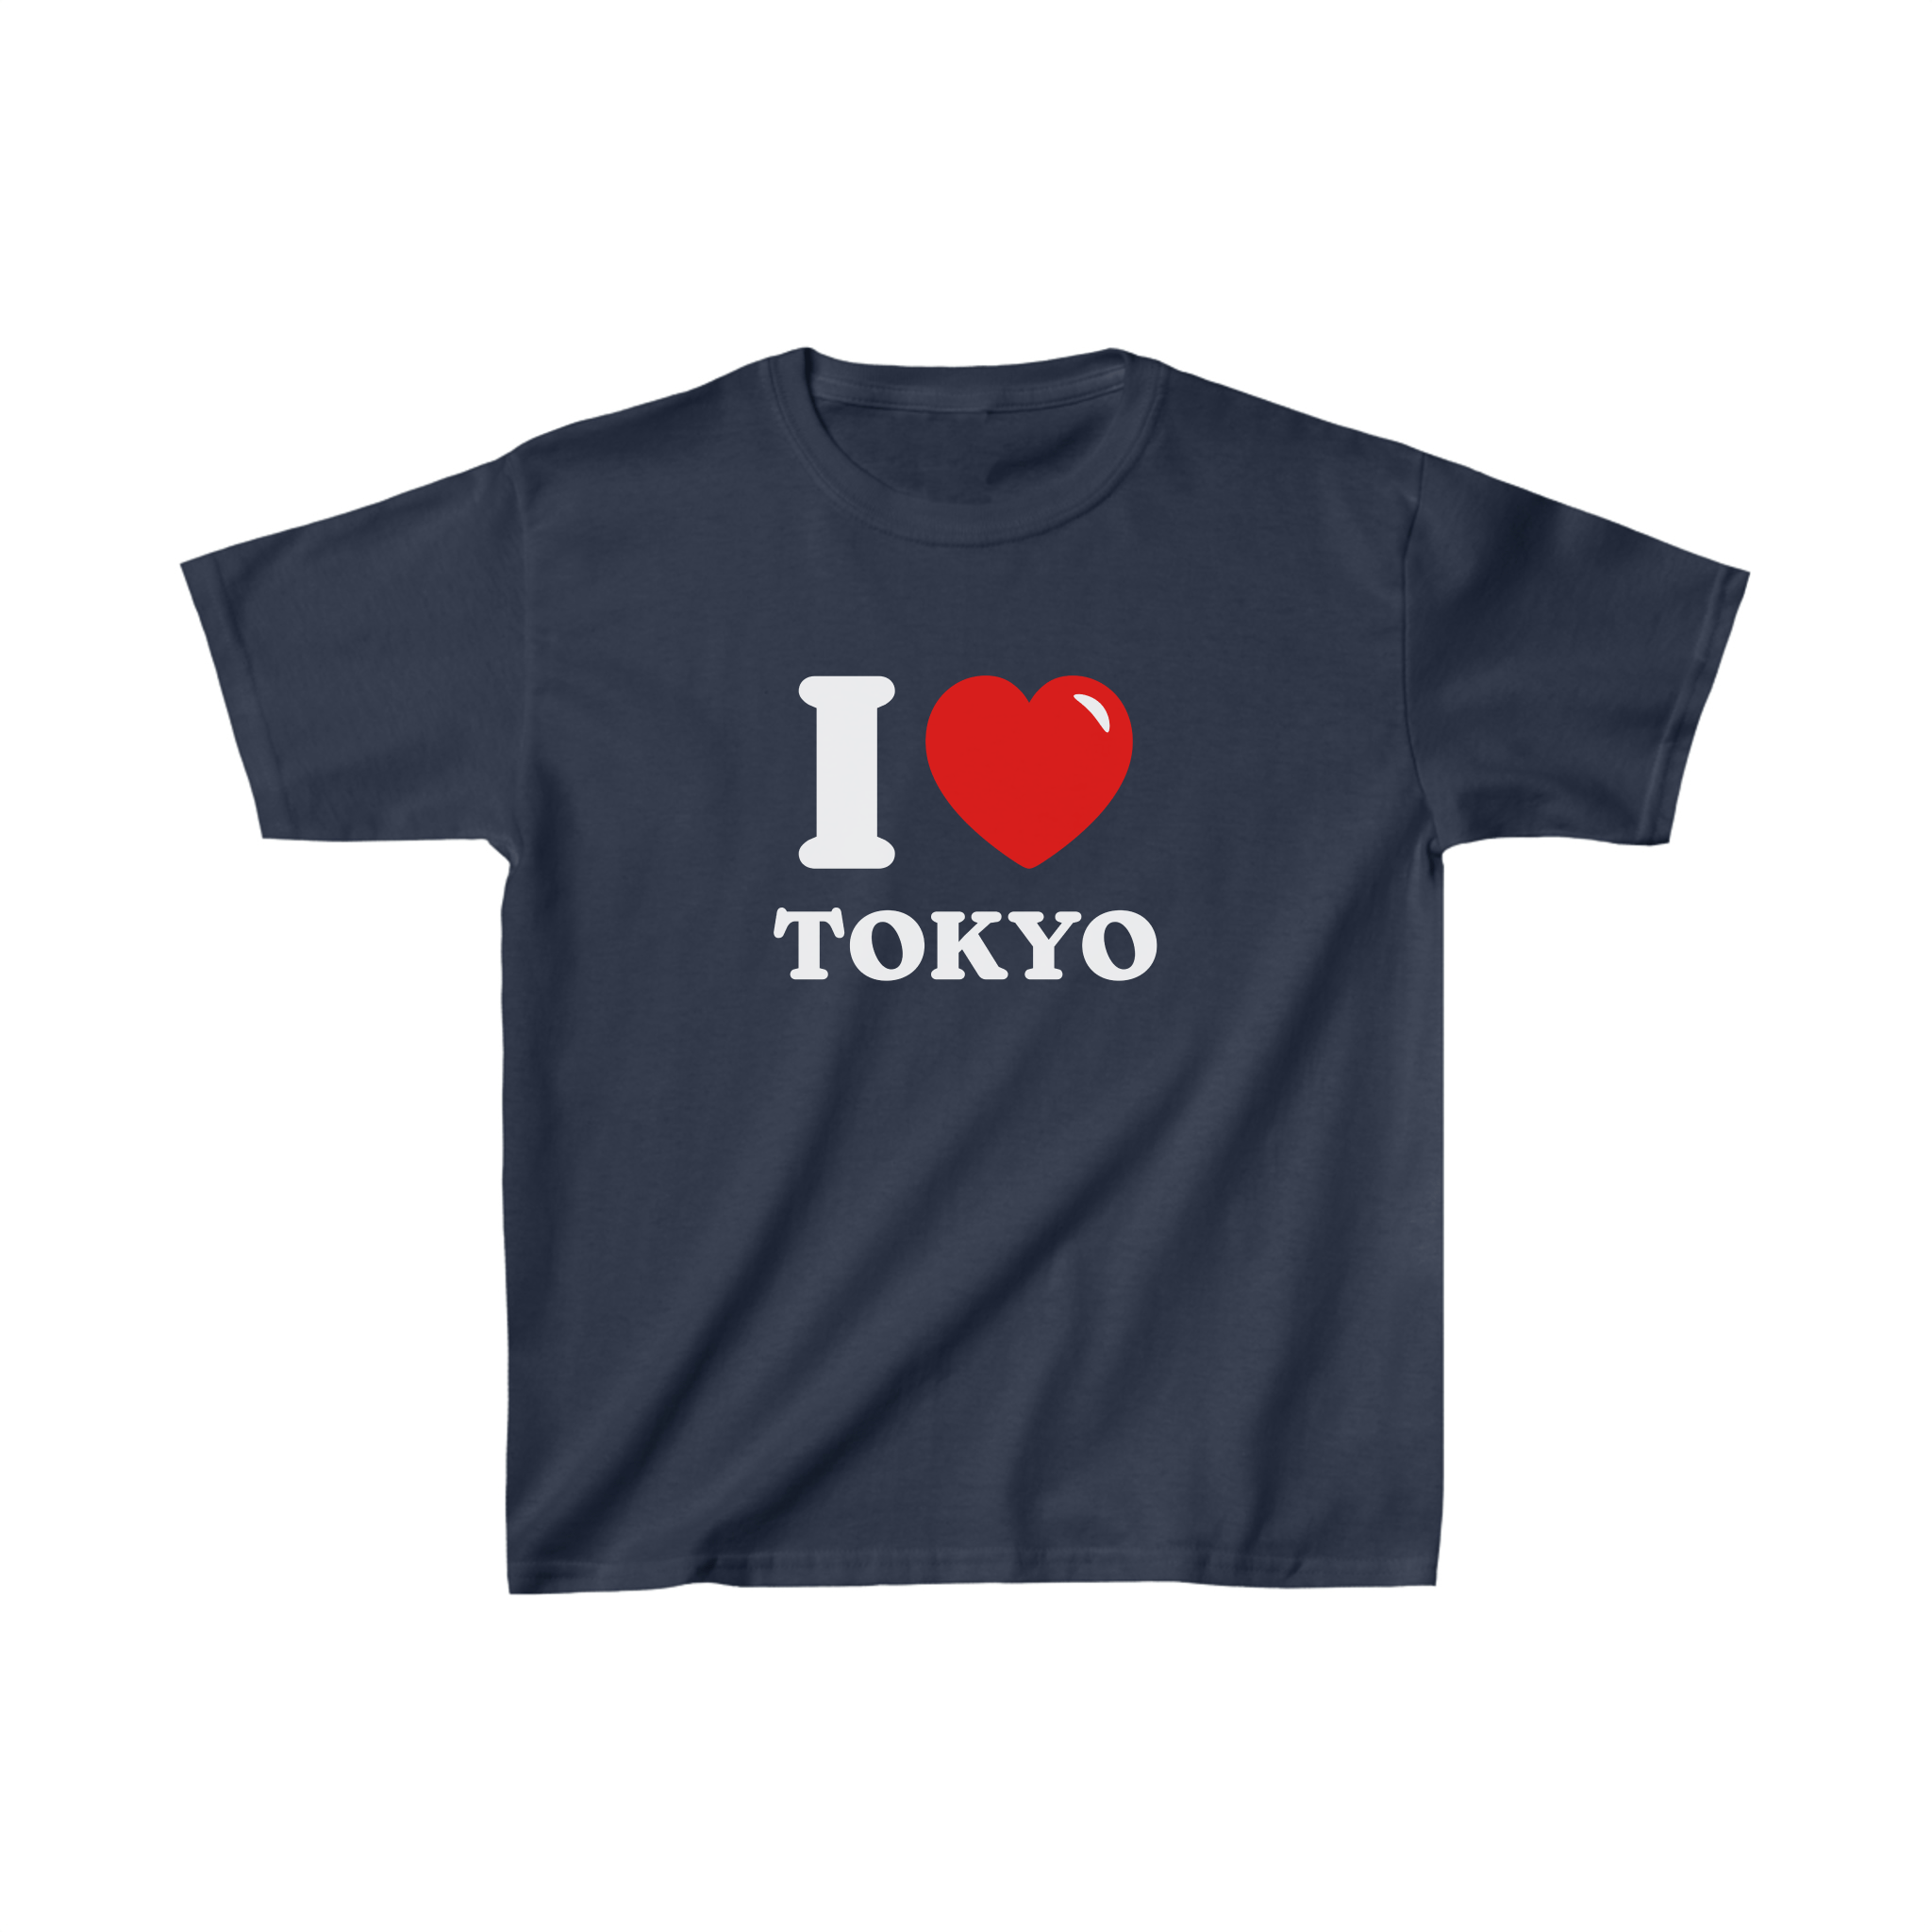 'I love Tokyo' baby tee - In Print We Trust